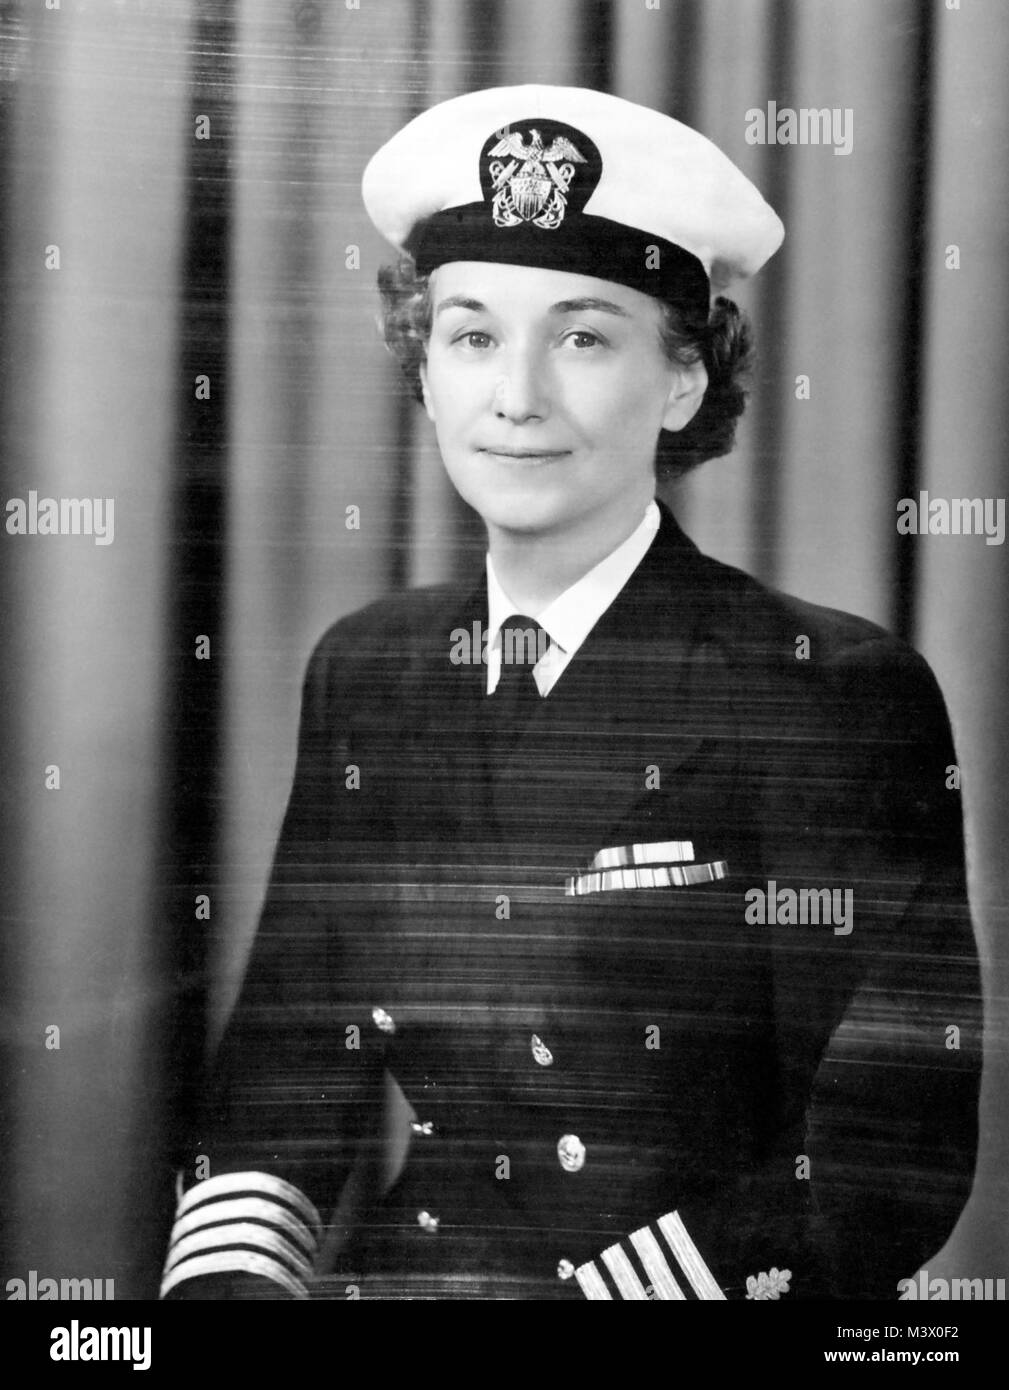 80-G-412873: Capitano Winnie Gibson, NC, USN, 16 marzo 1950. Ufficiale DEGLI STATI UNITI Fotografia della marina militare, ora nelle collezioni di archivi nazionali. (2018/01/31). 80-G -412873 39110958425 o Foto Stock